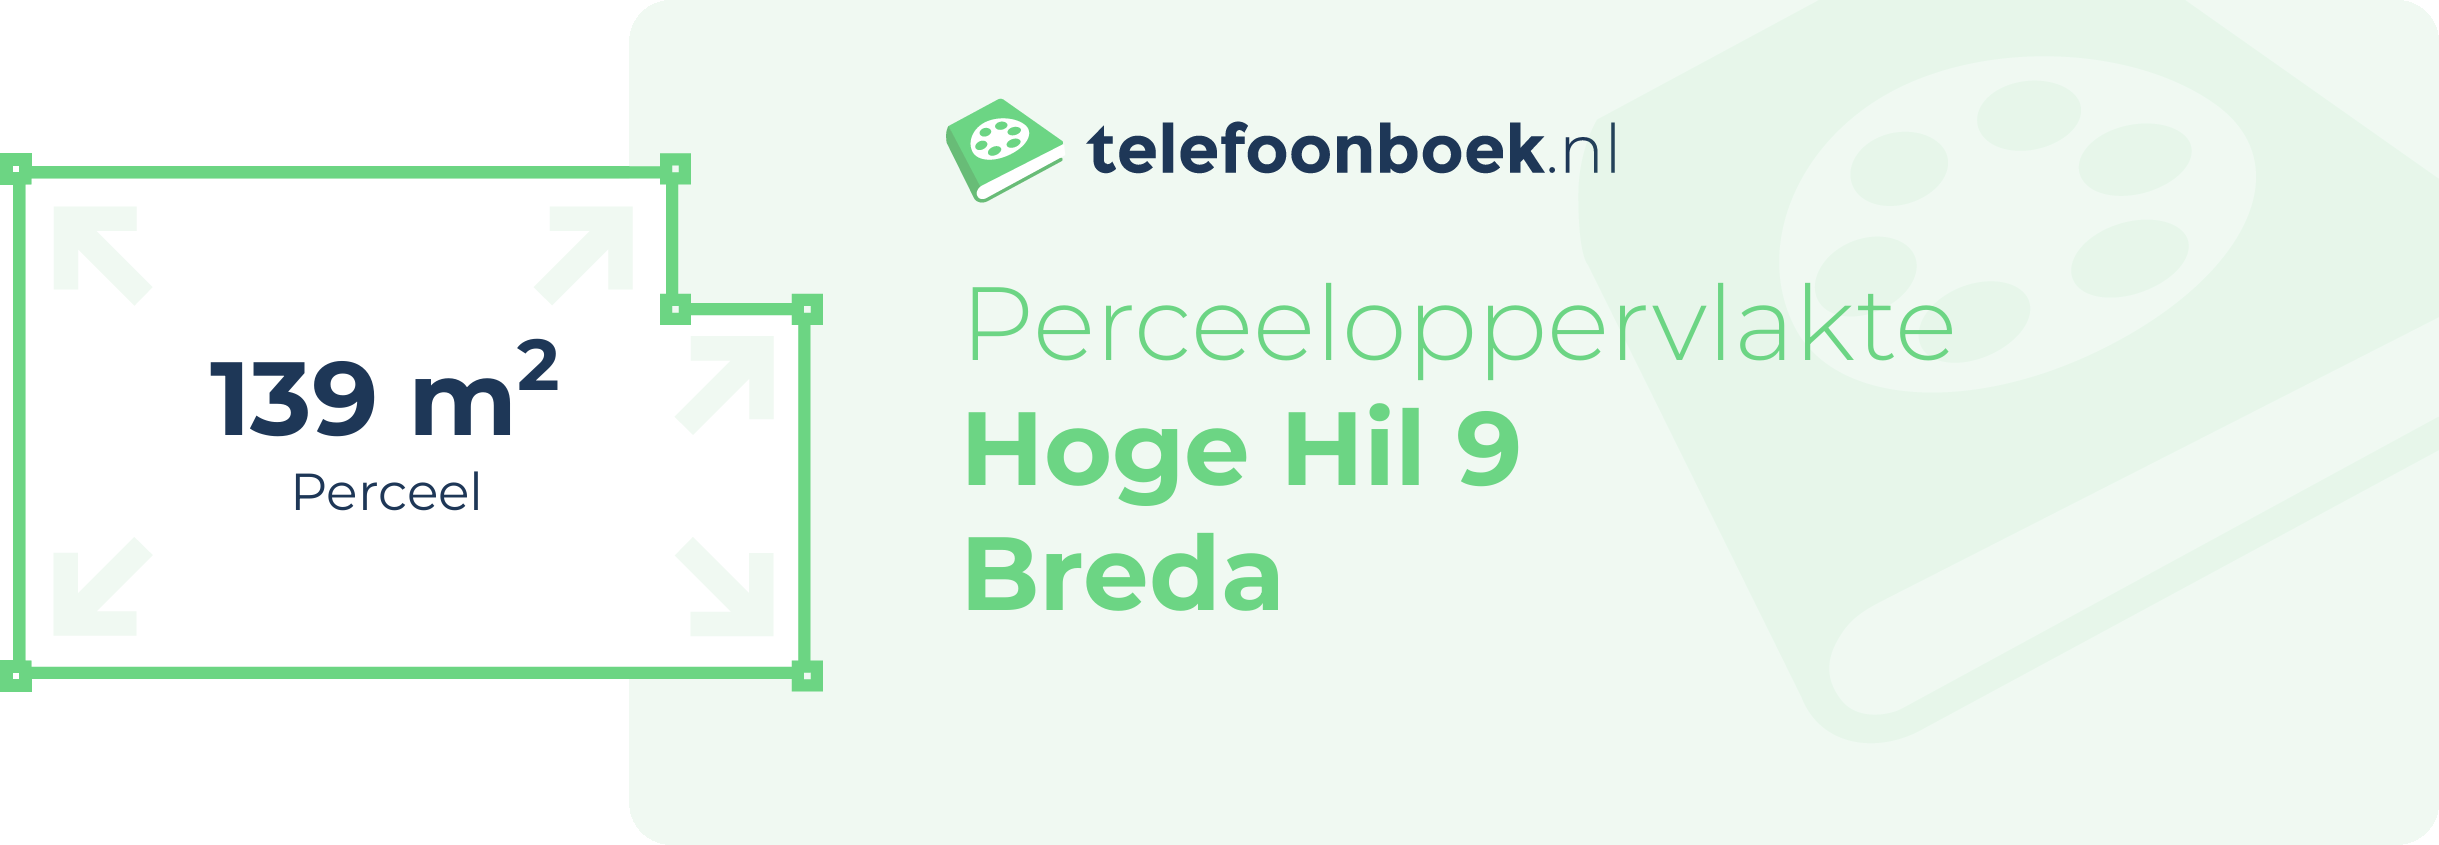 Perceeloppervlakte Hoge Hil 9 Breda